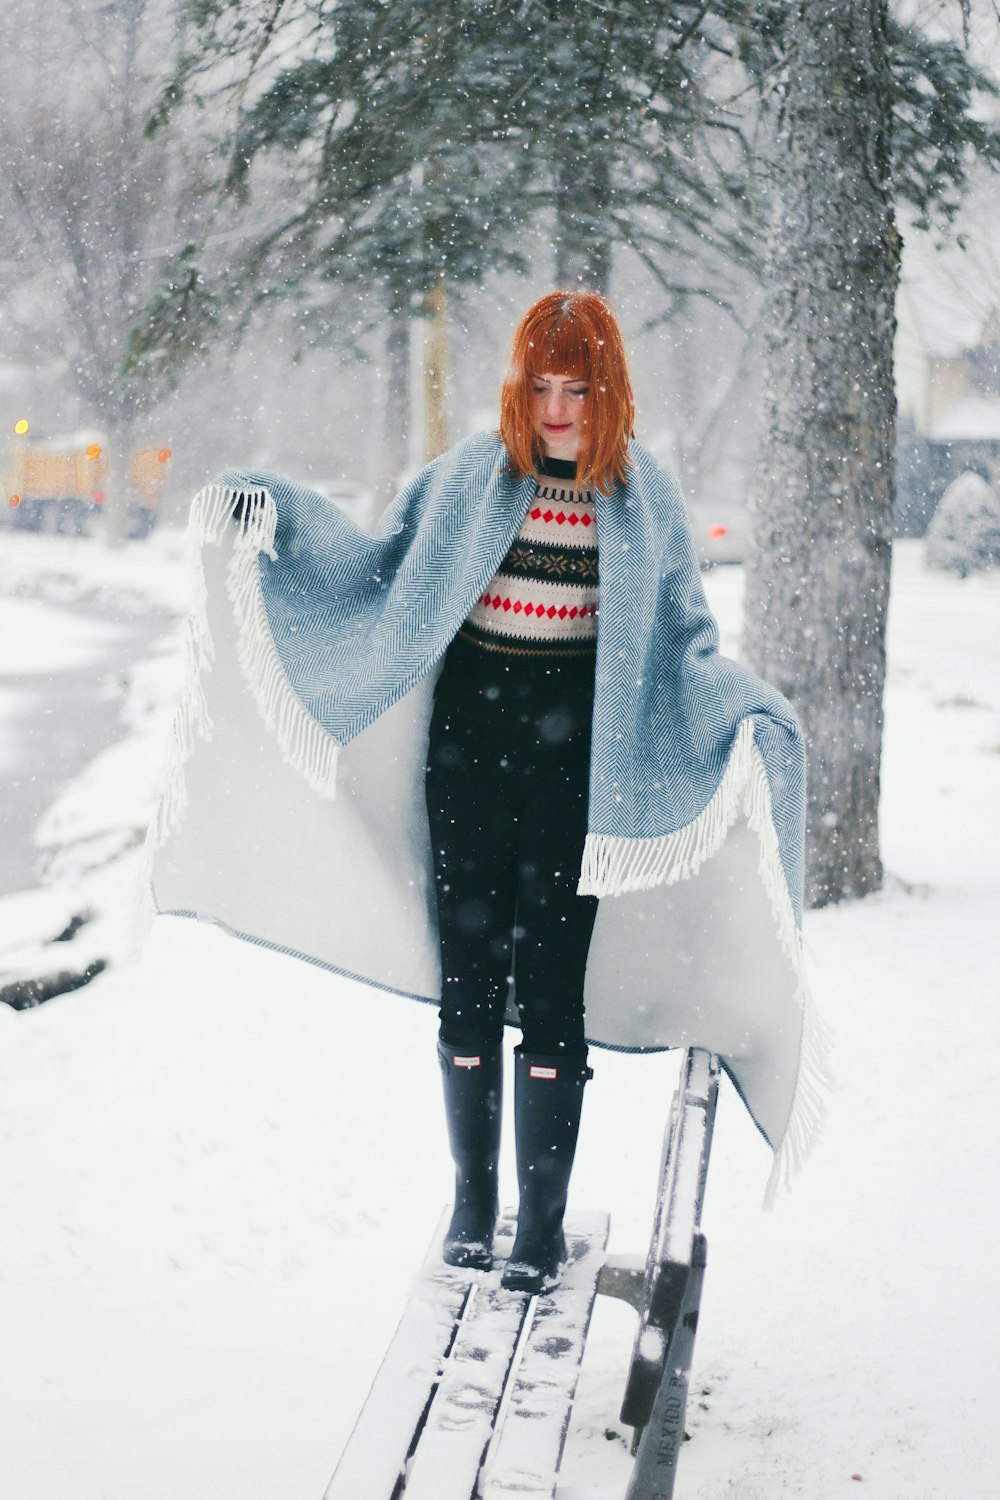 Donna in piedi sulla panchina coperta di neve mentre nevica durante il giorno